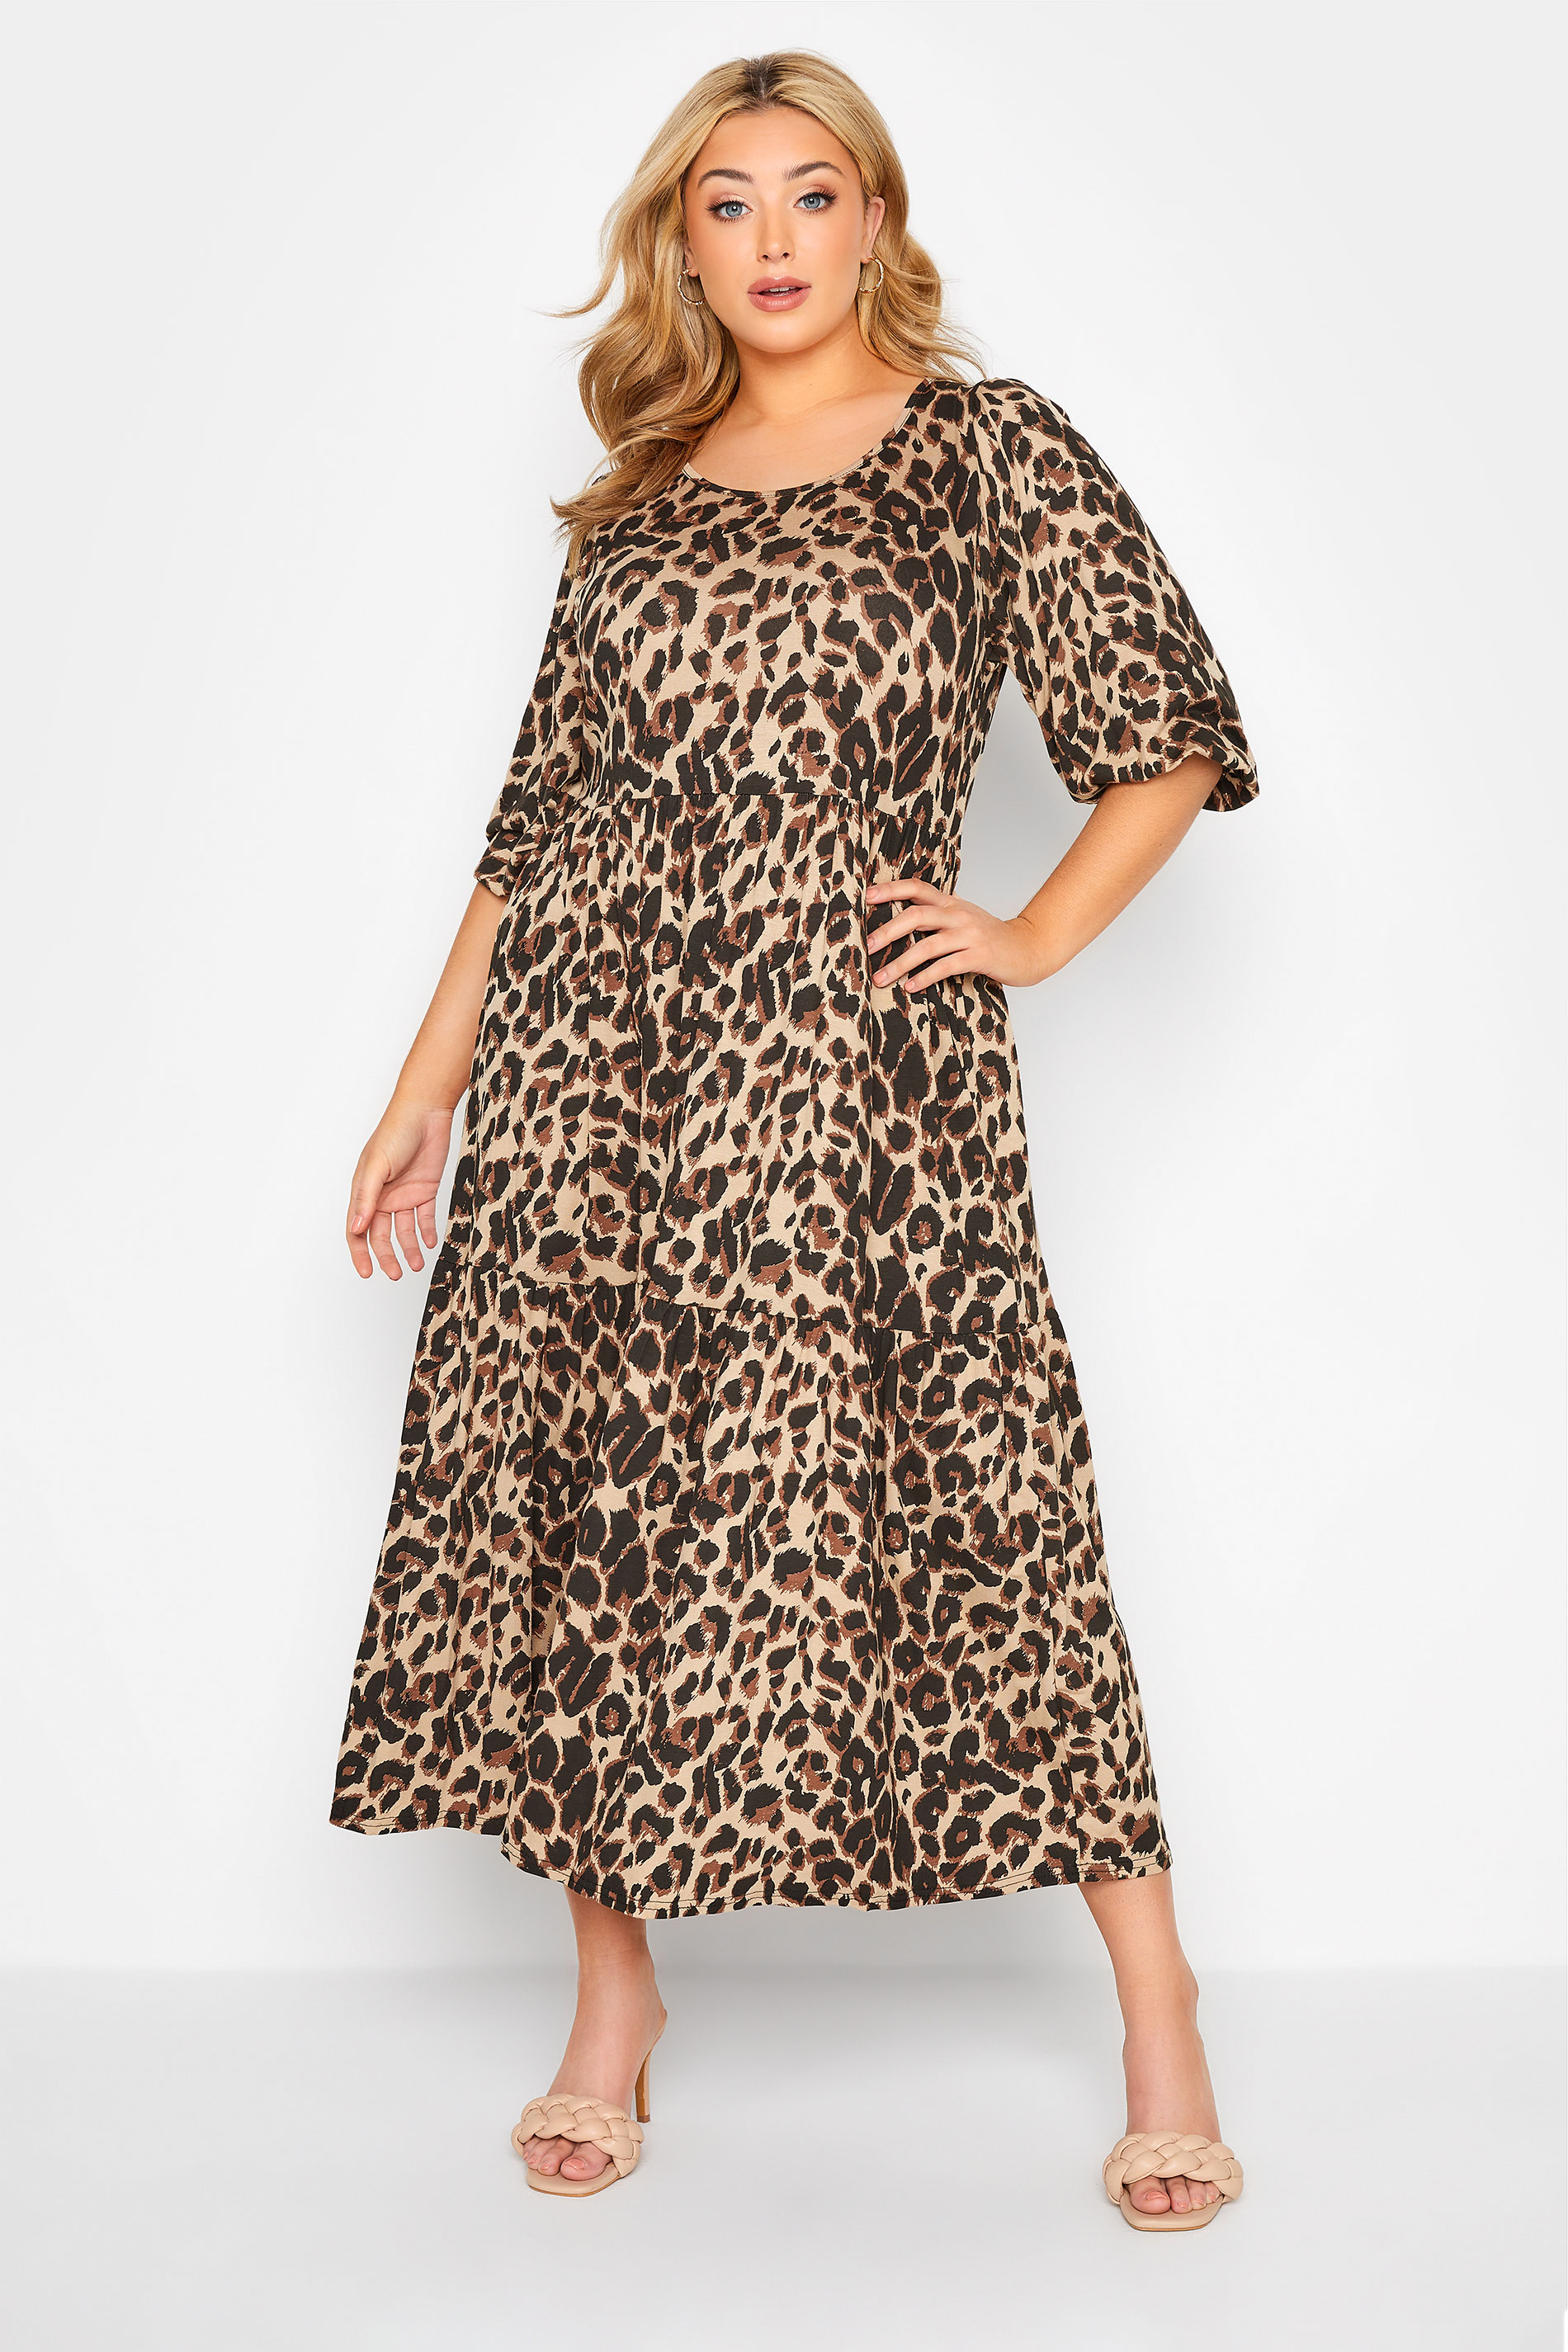 Beige Brown Leopard Print Maxi Dress ...